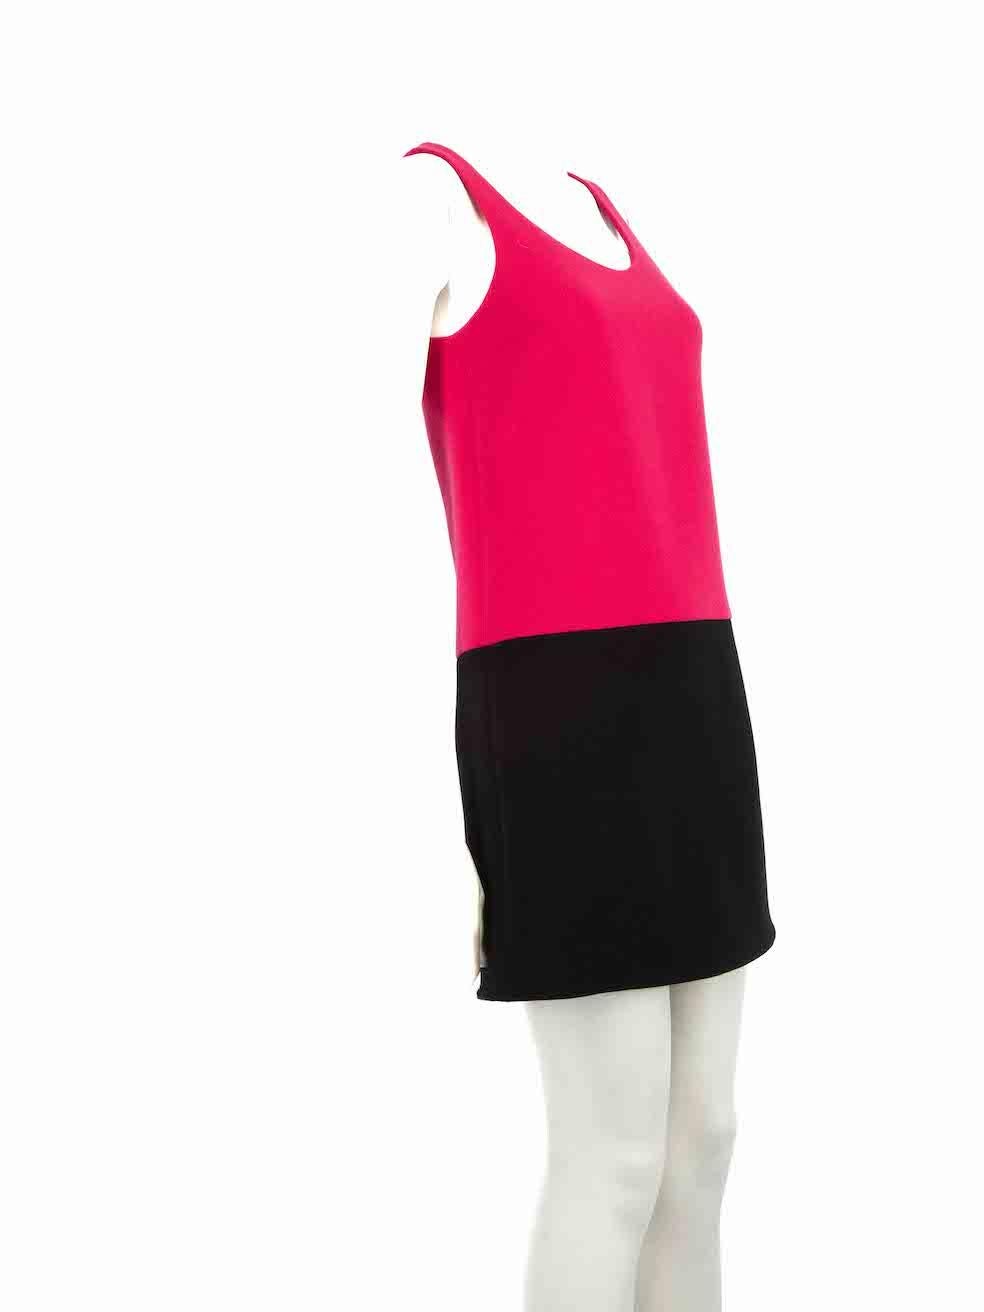 CONDIT ist sehr gut. Kaum sichtbare Abnutzungserscheinungen am Kleid sind bei diesem gebrauchten Saint Laurent Designer-Wiederverkaufsartikel zu erkennen.
 
 Einzelheiten
 Multicolour - rosa, schwarz
 Wolle
 Etuikleid
 Ärmellos
 Knielang
